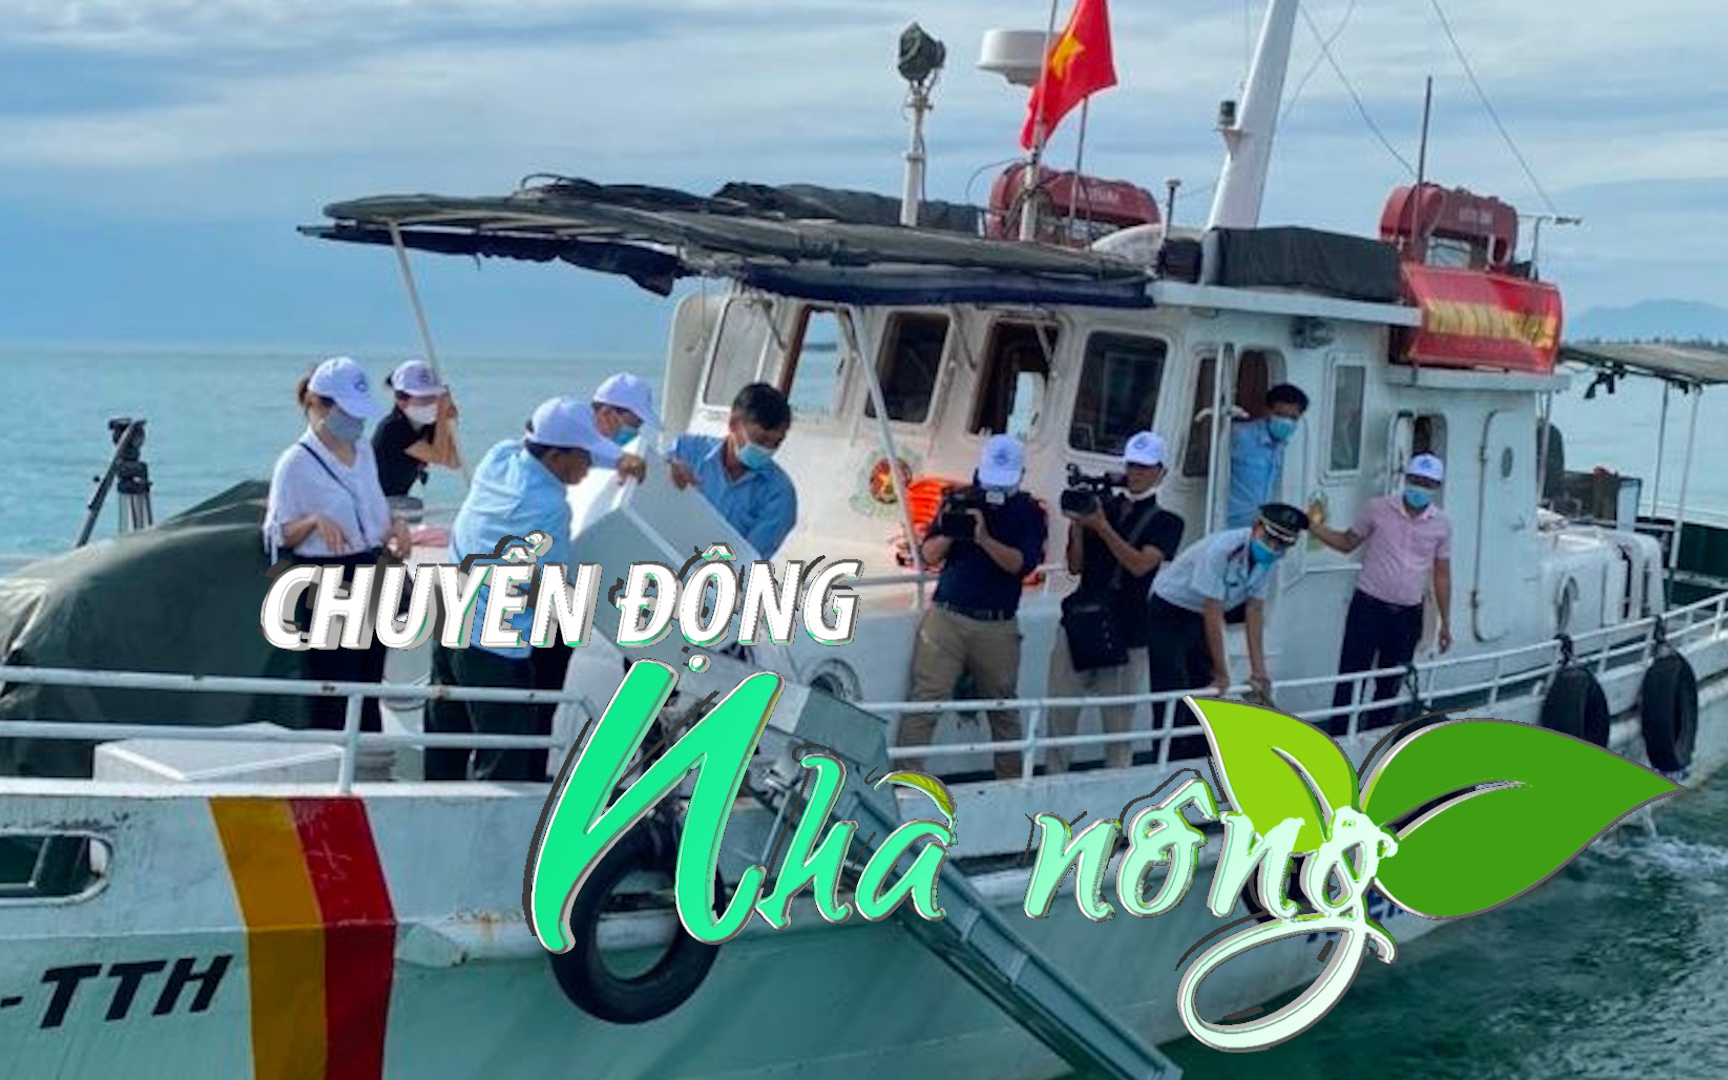 Chuyển động Nhà nông 1/9: Thừa Thiên Huế thả 5.000 con tôm sú trưởng thành xuống biển